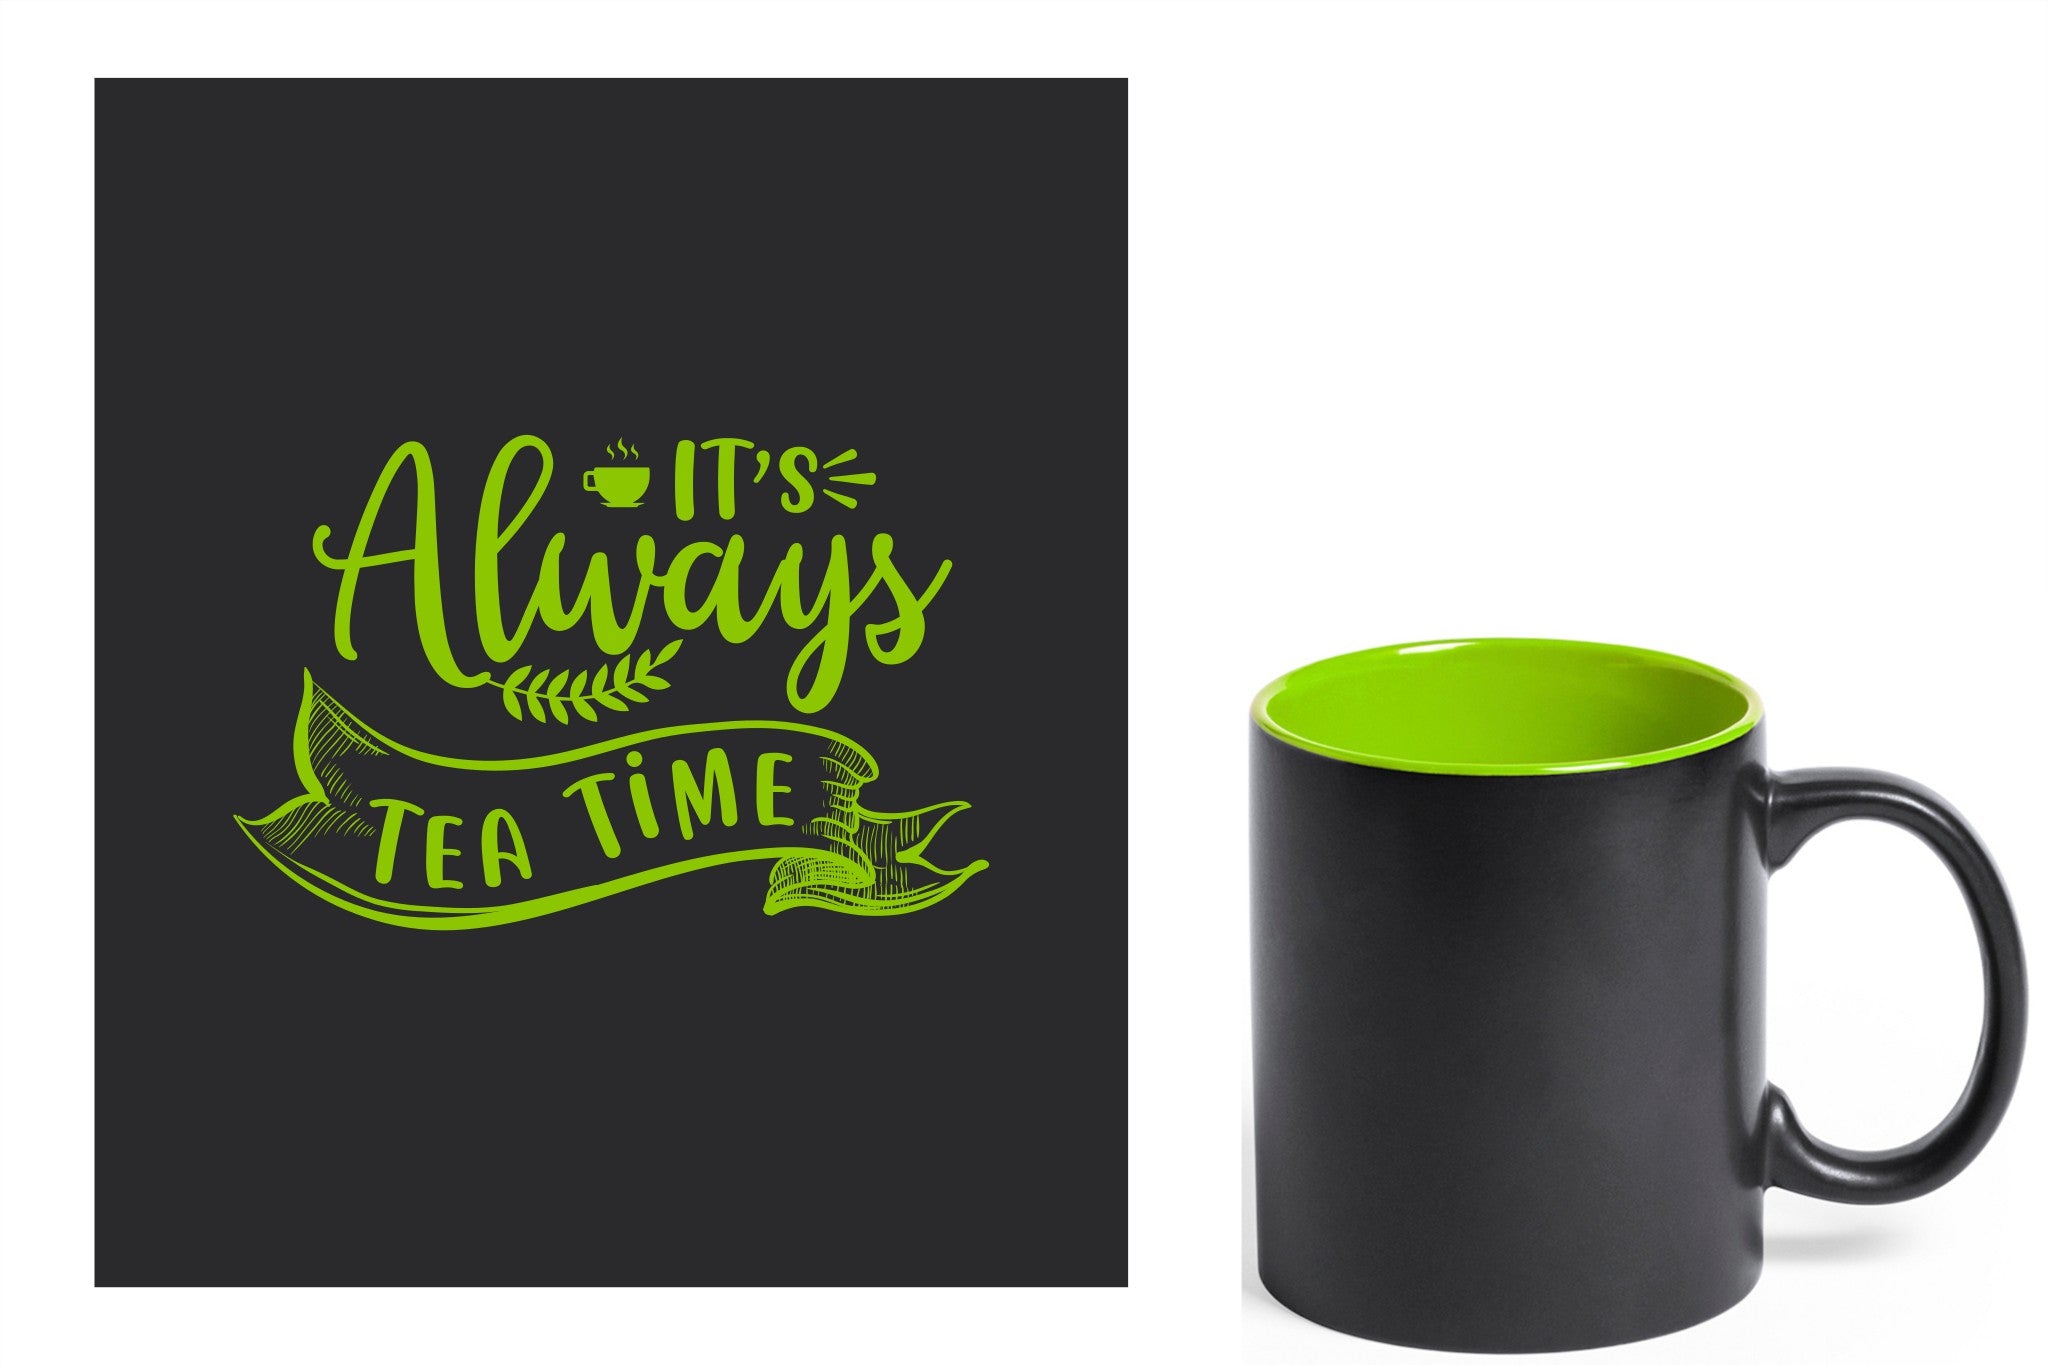 zwarte keramische mok met groene gravure  'It's always tea time'.